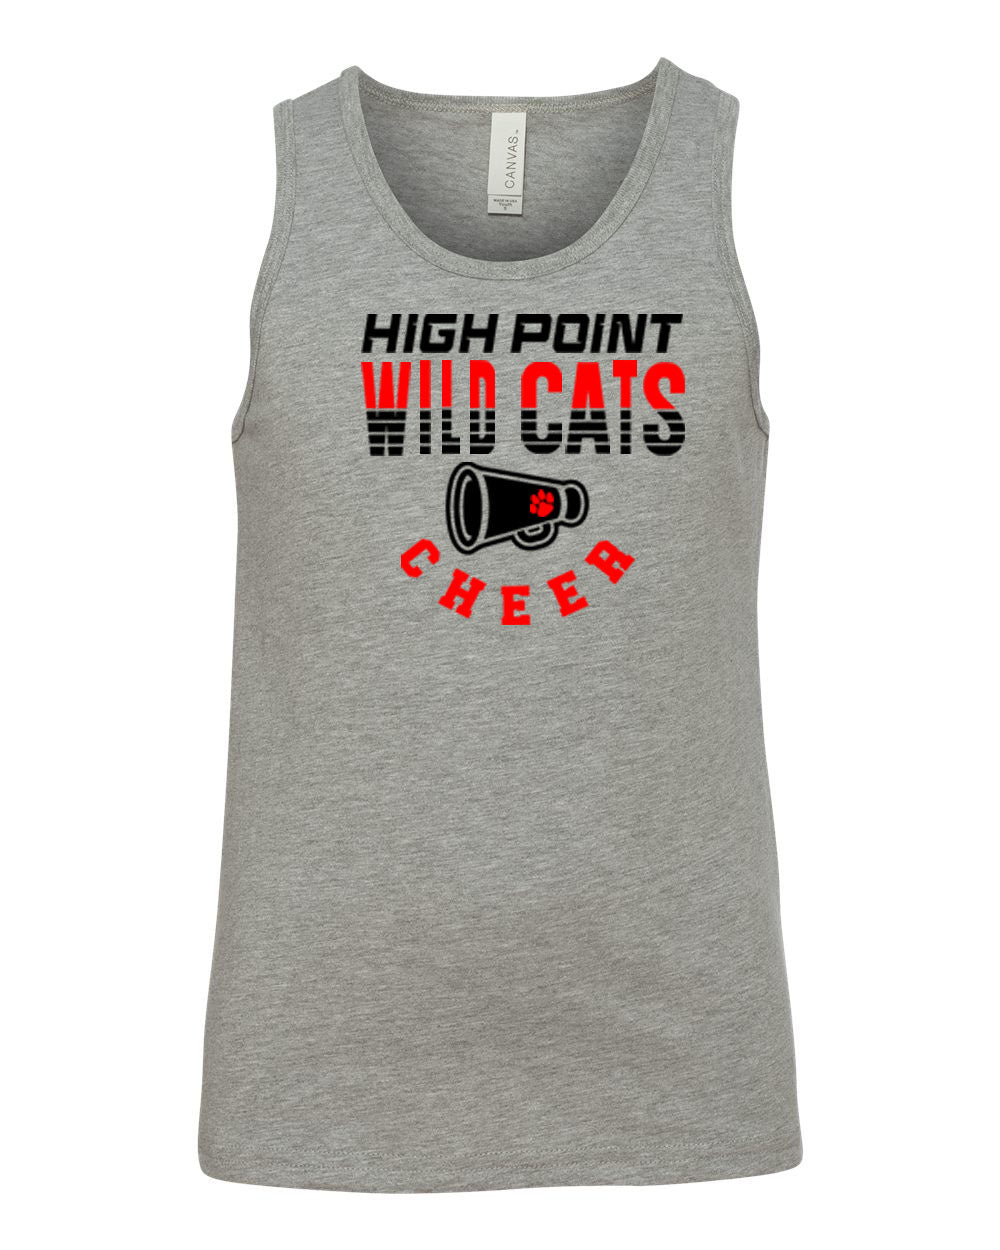 Wildcats Cheer design 2 Ladies Muscle Tank Top